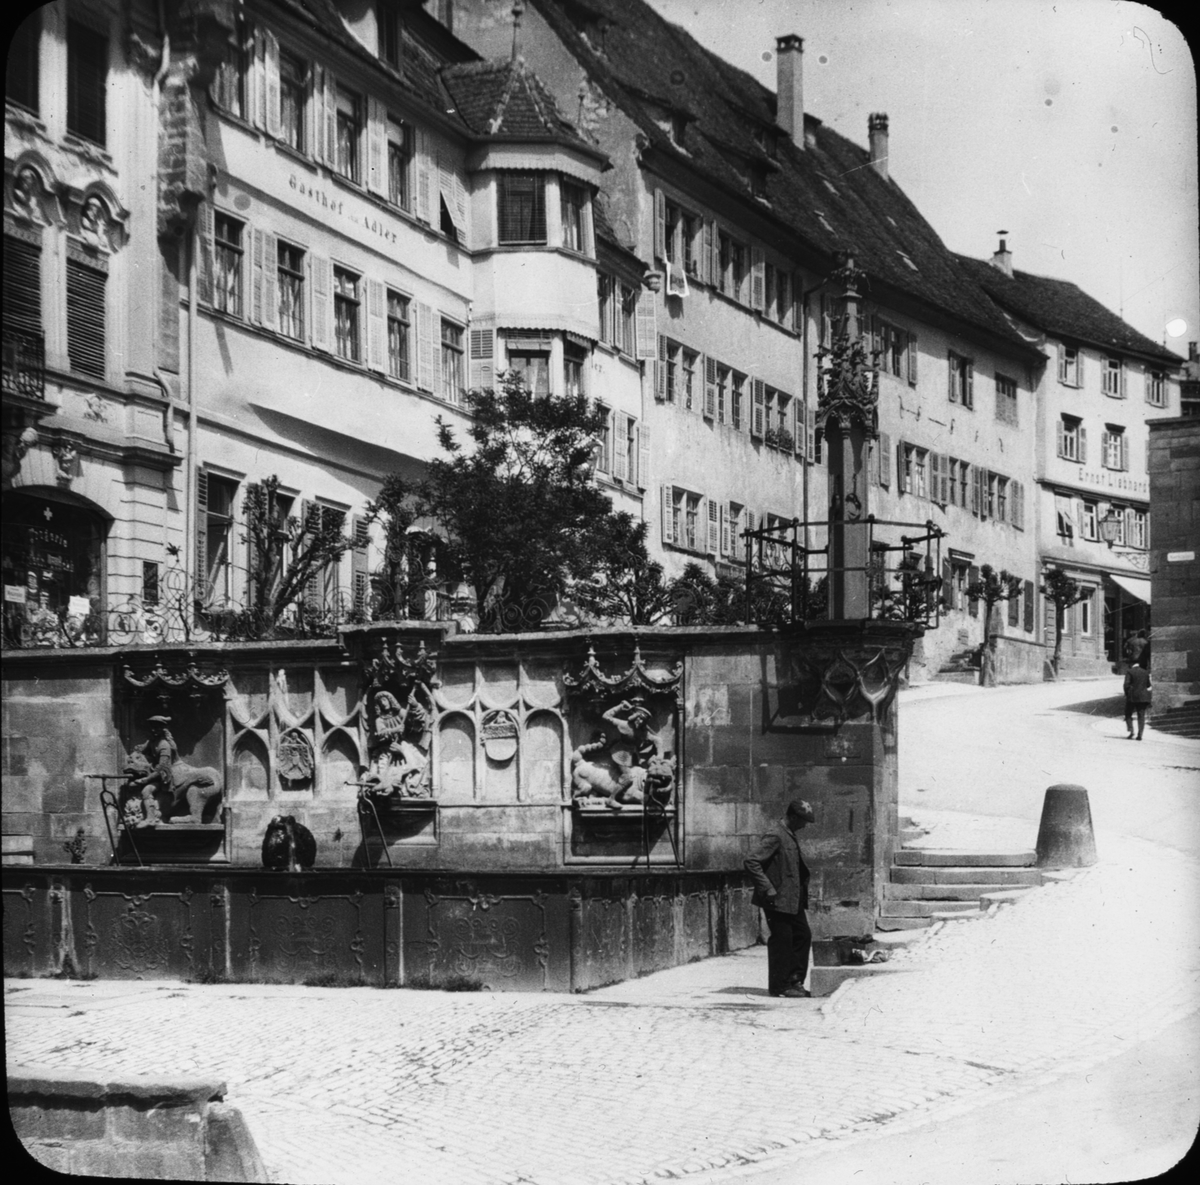 Skioptikonbild med motiv av Marknadsbrunnen i Schwäbisch Hall.
Bilden har förvarats i kartong märkt: Resan 1911. Schwäbisch Hall 9. XVII. Text på bild: "Marktbrunnen. 1509".